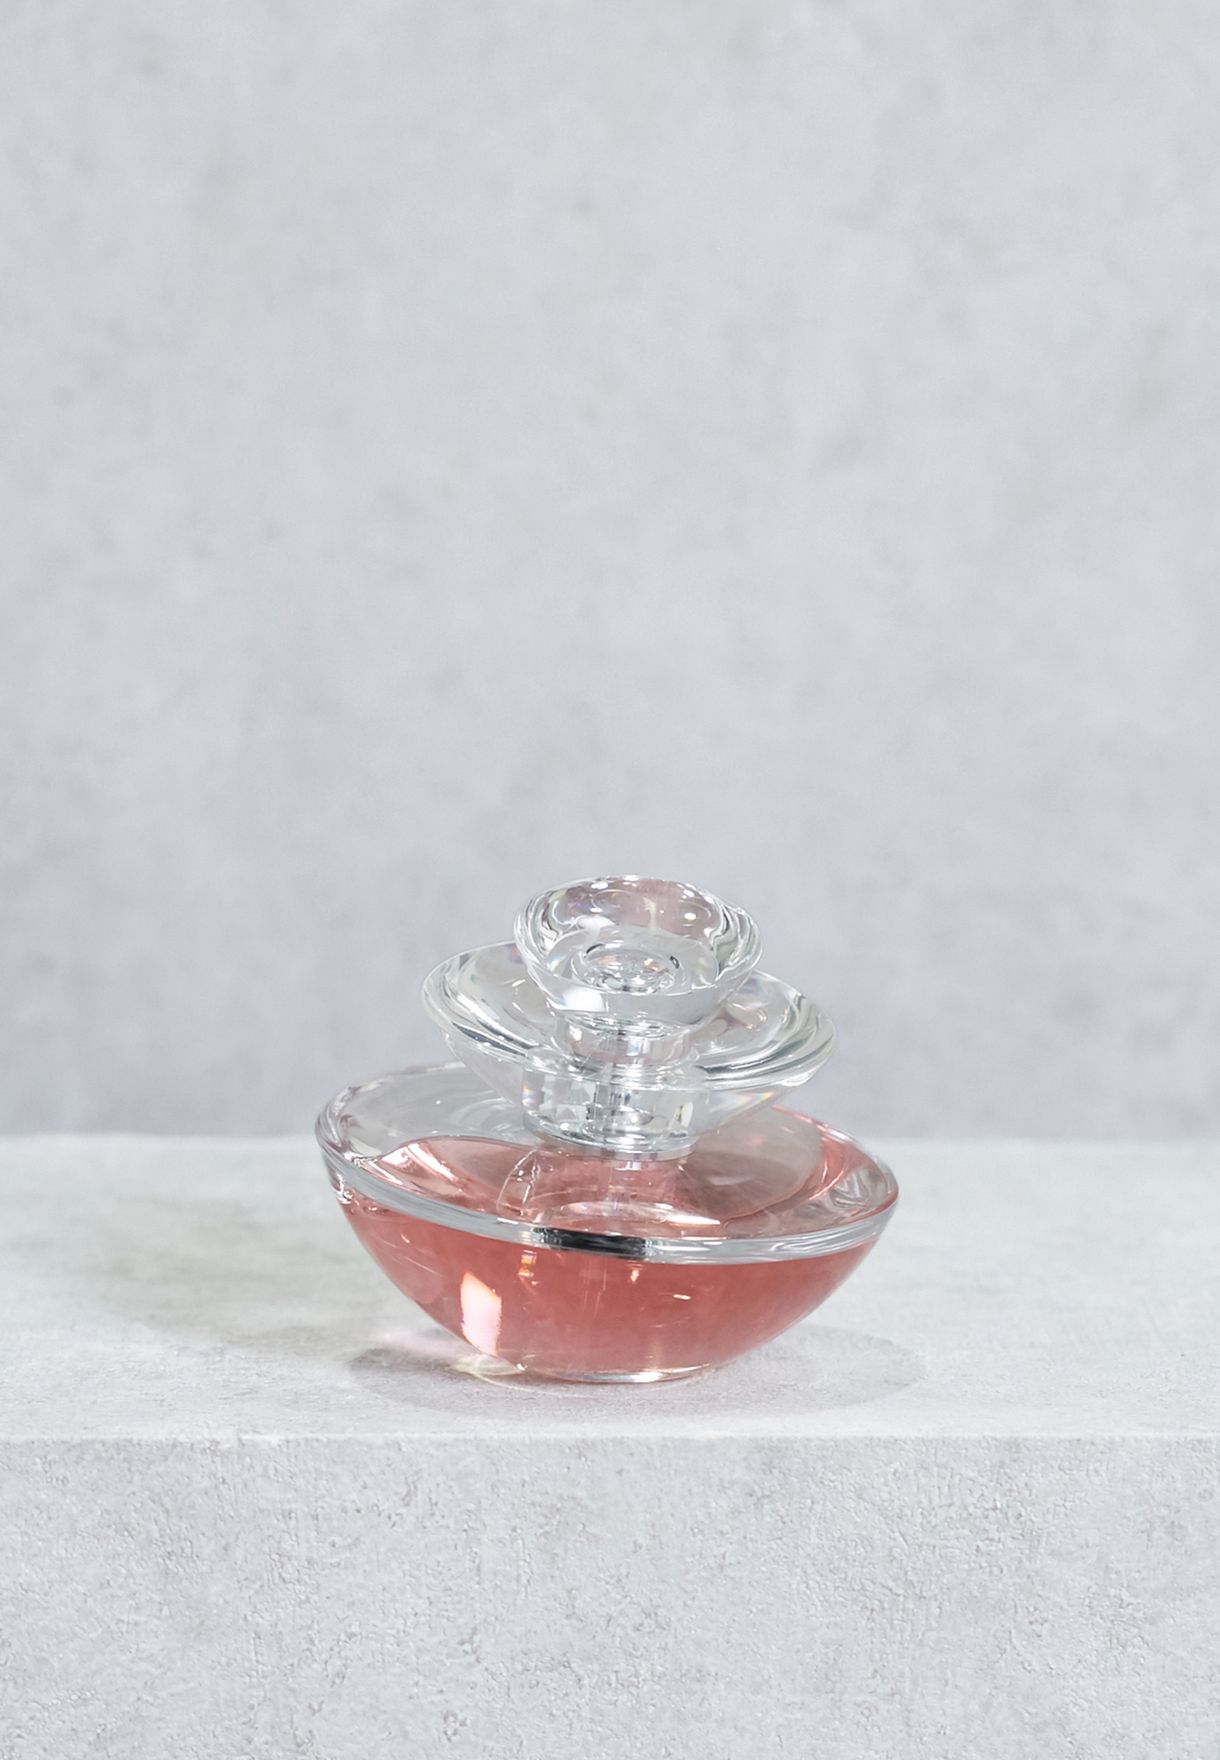 Insolence Eau De Toilette Guerlain Perfume A Fragrance For Women